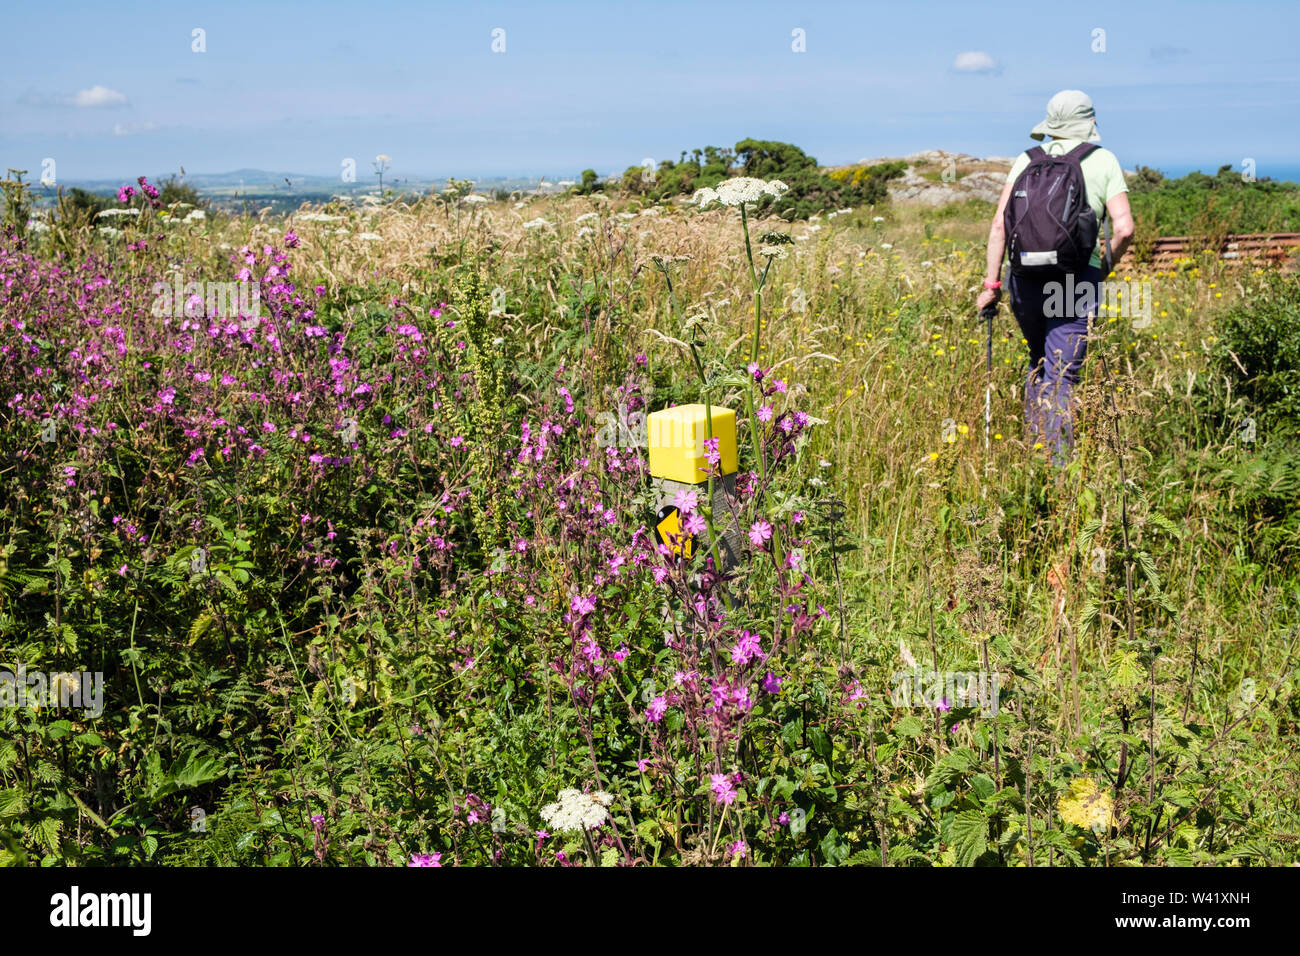 Inscrivez-waymarker sentier enfoui dans les fleurs sauvages avec walker sur chemin envahi dans la campagne en été. Llaneilian, Isle of Anglesey, au nord du Pays de Galles, Royaume-Uni Banque D'Images